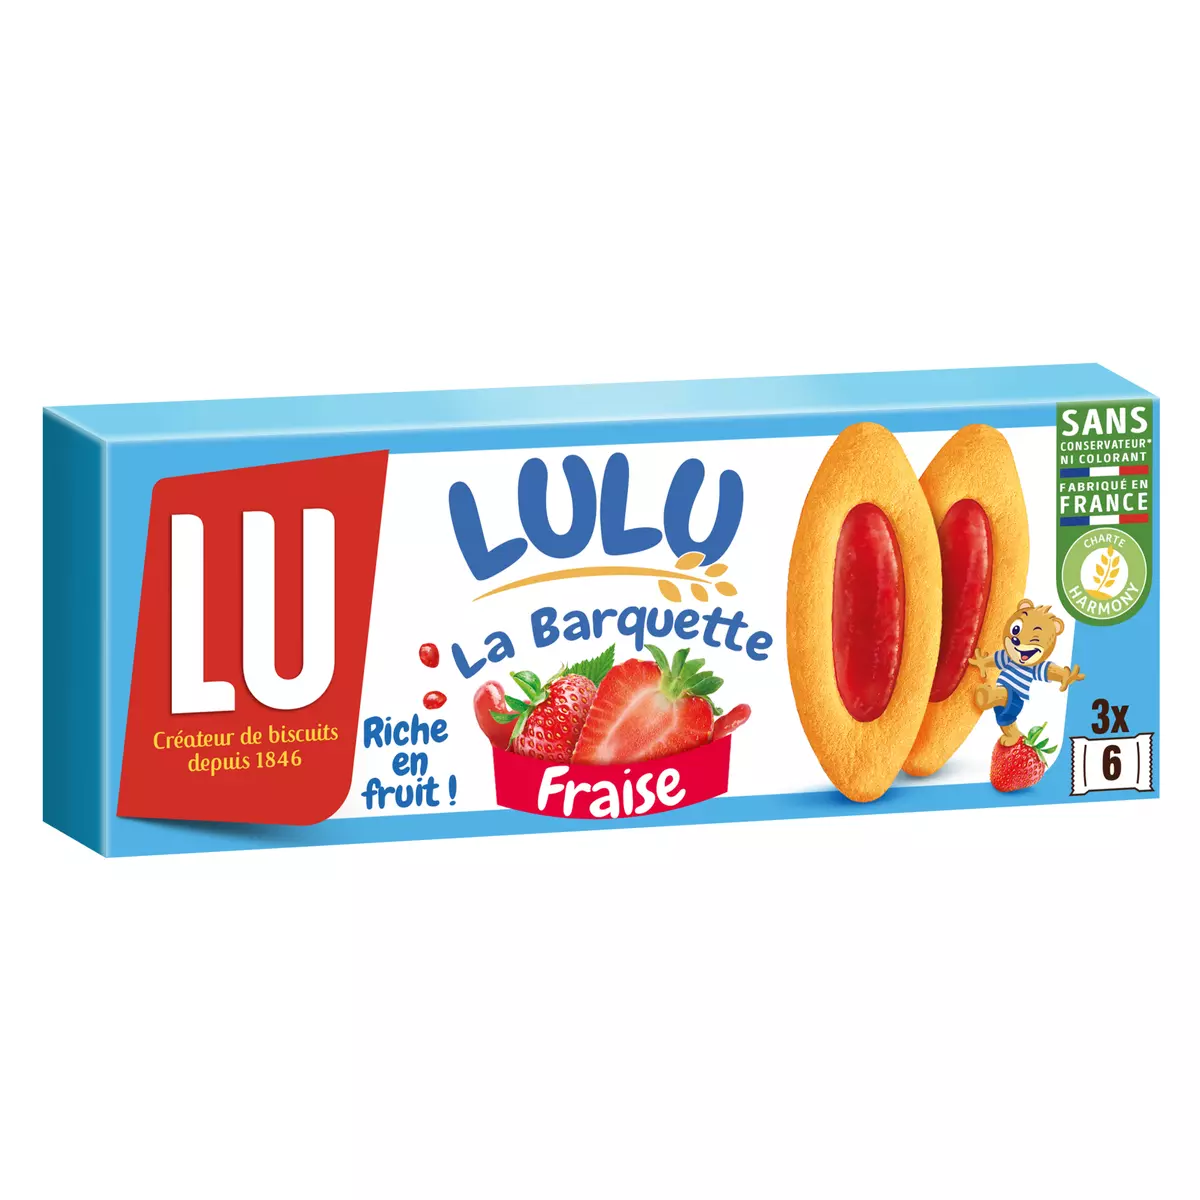 LU Lulu barquettes à la fraise 3x6 biscuits 120g